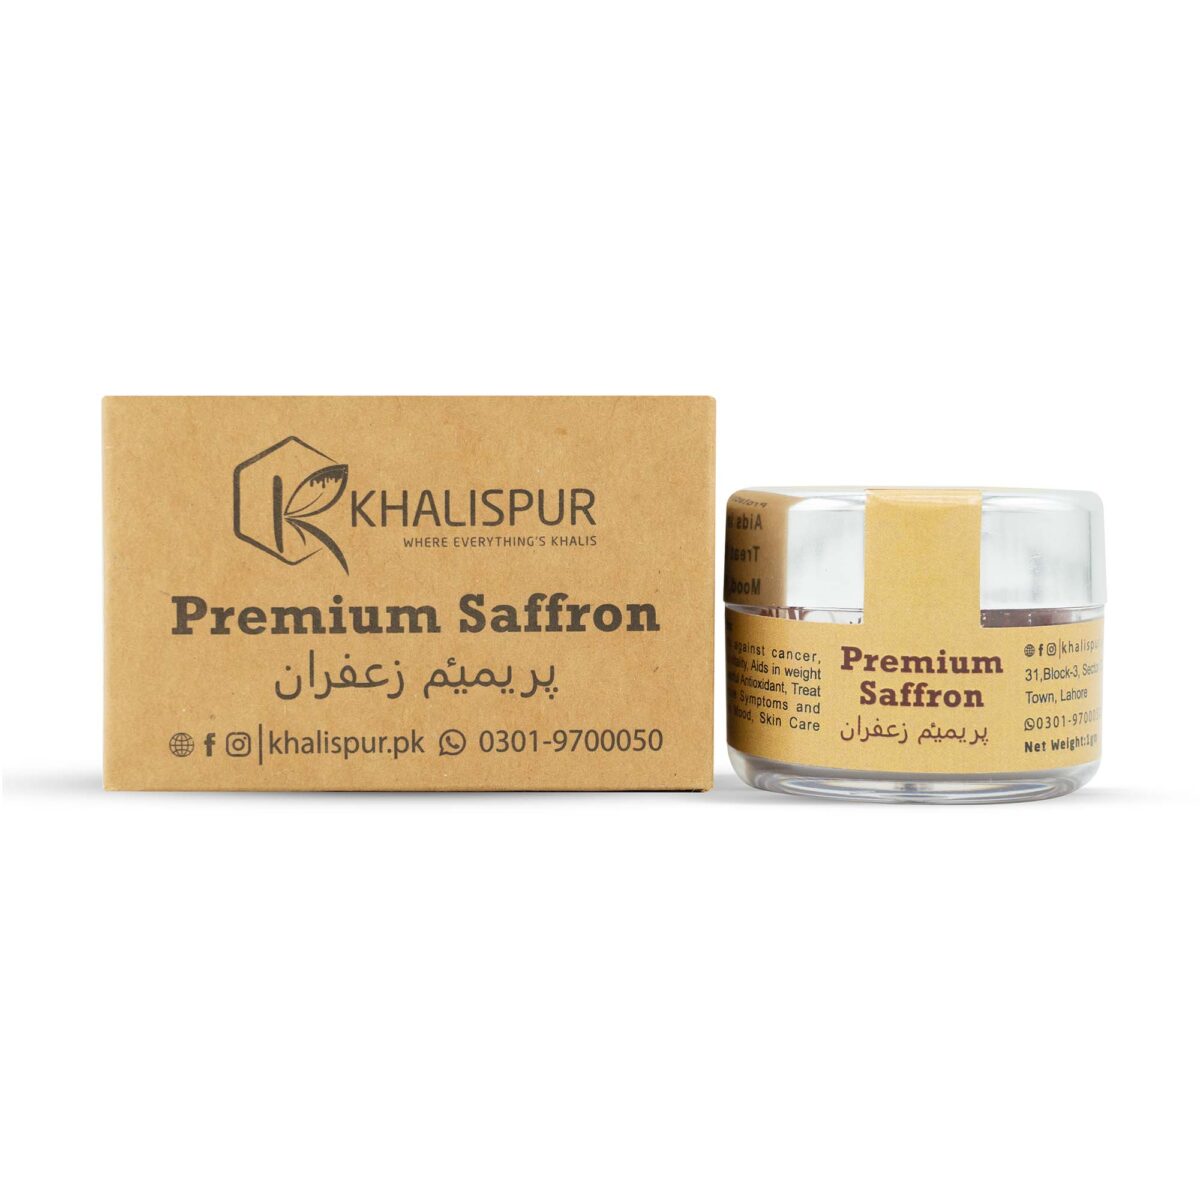 Premium Saffron (Saffron Threads)